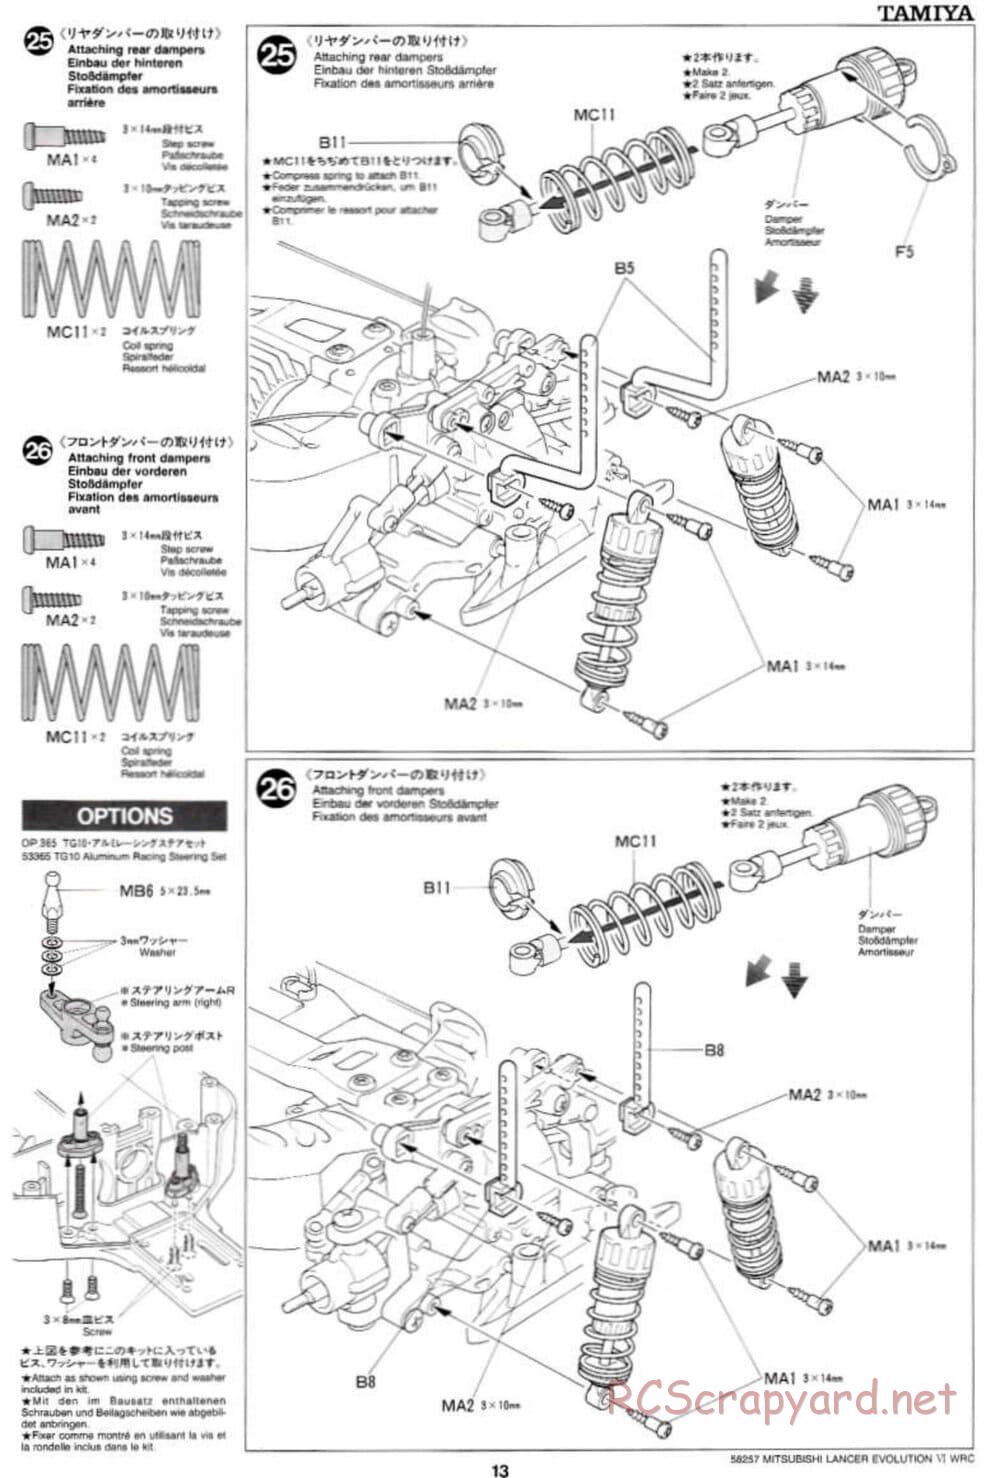 Tamiya - Mitsubishi Lancer Evolution VI WRC - TB-01 Chassis - Manual - Page 13